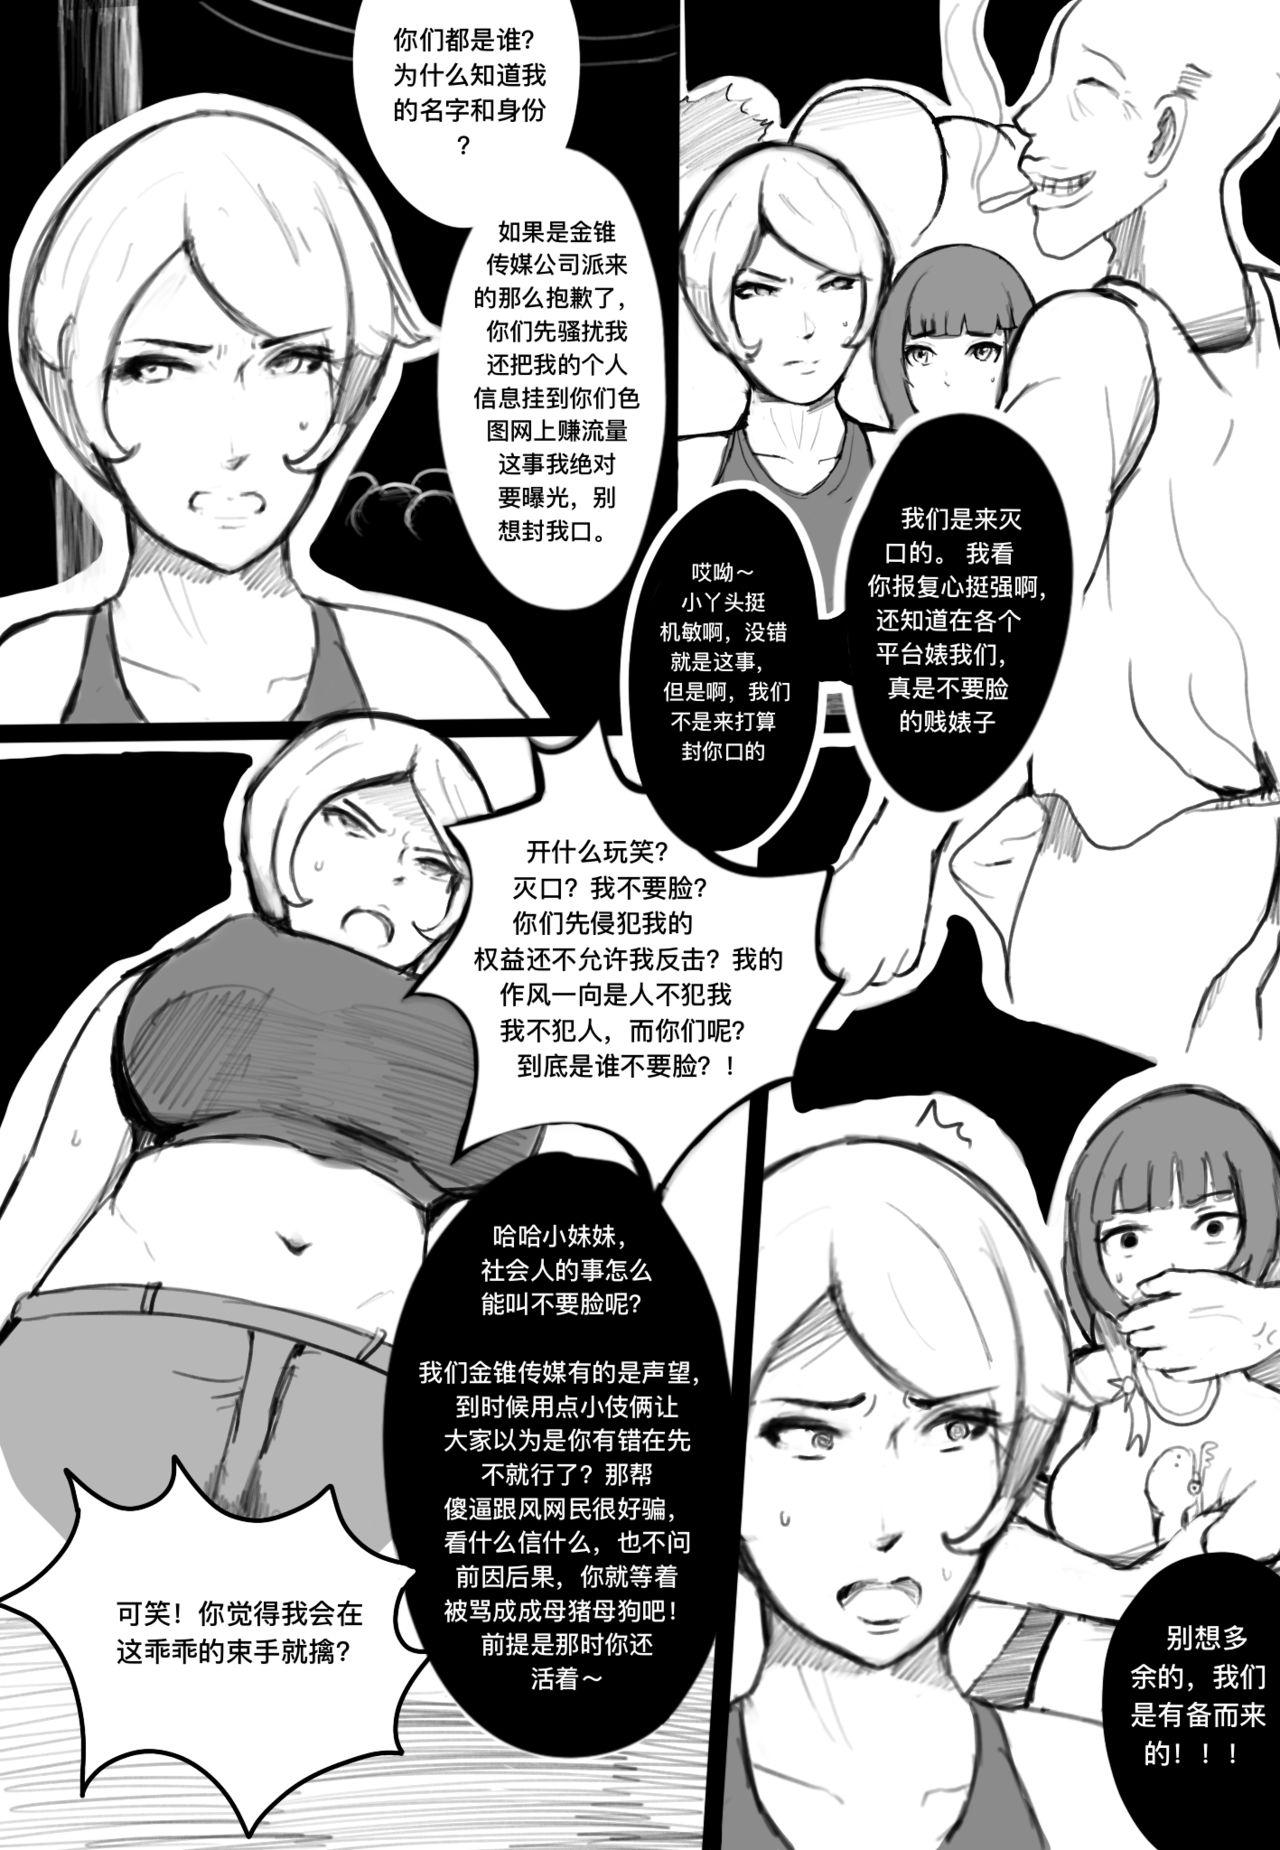 Oral Sex 奸杀组拉 - Original Rough Fucking - Page 2